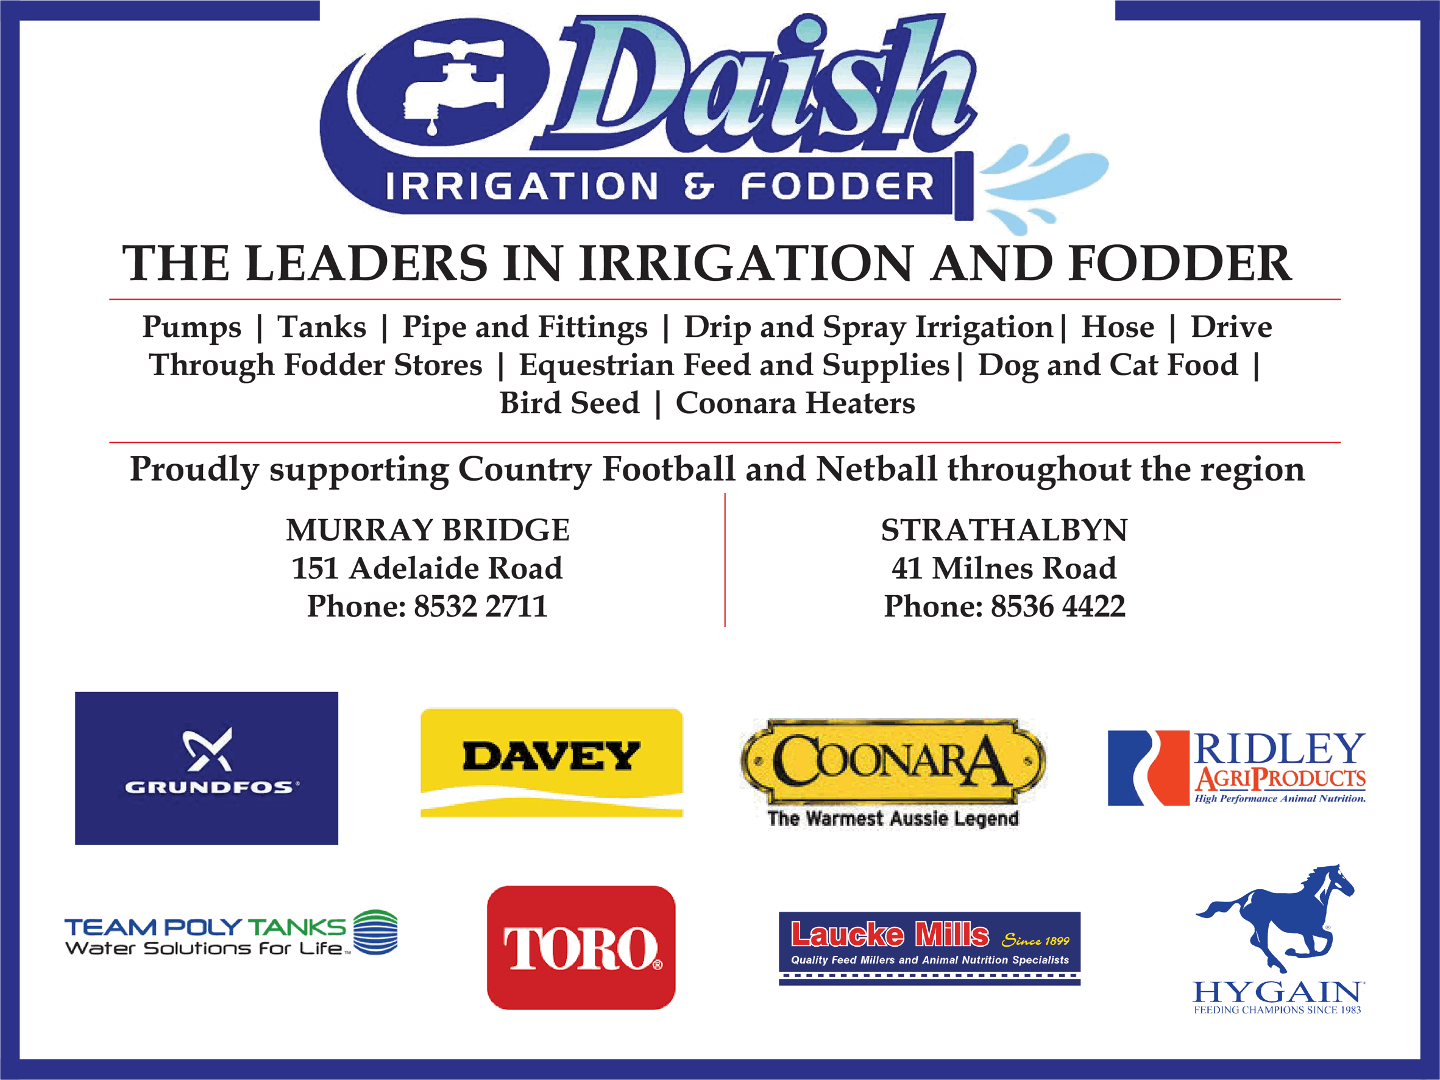 Daish Irrigation & Fodder